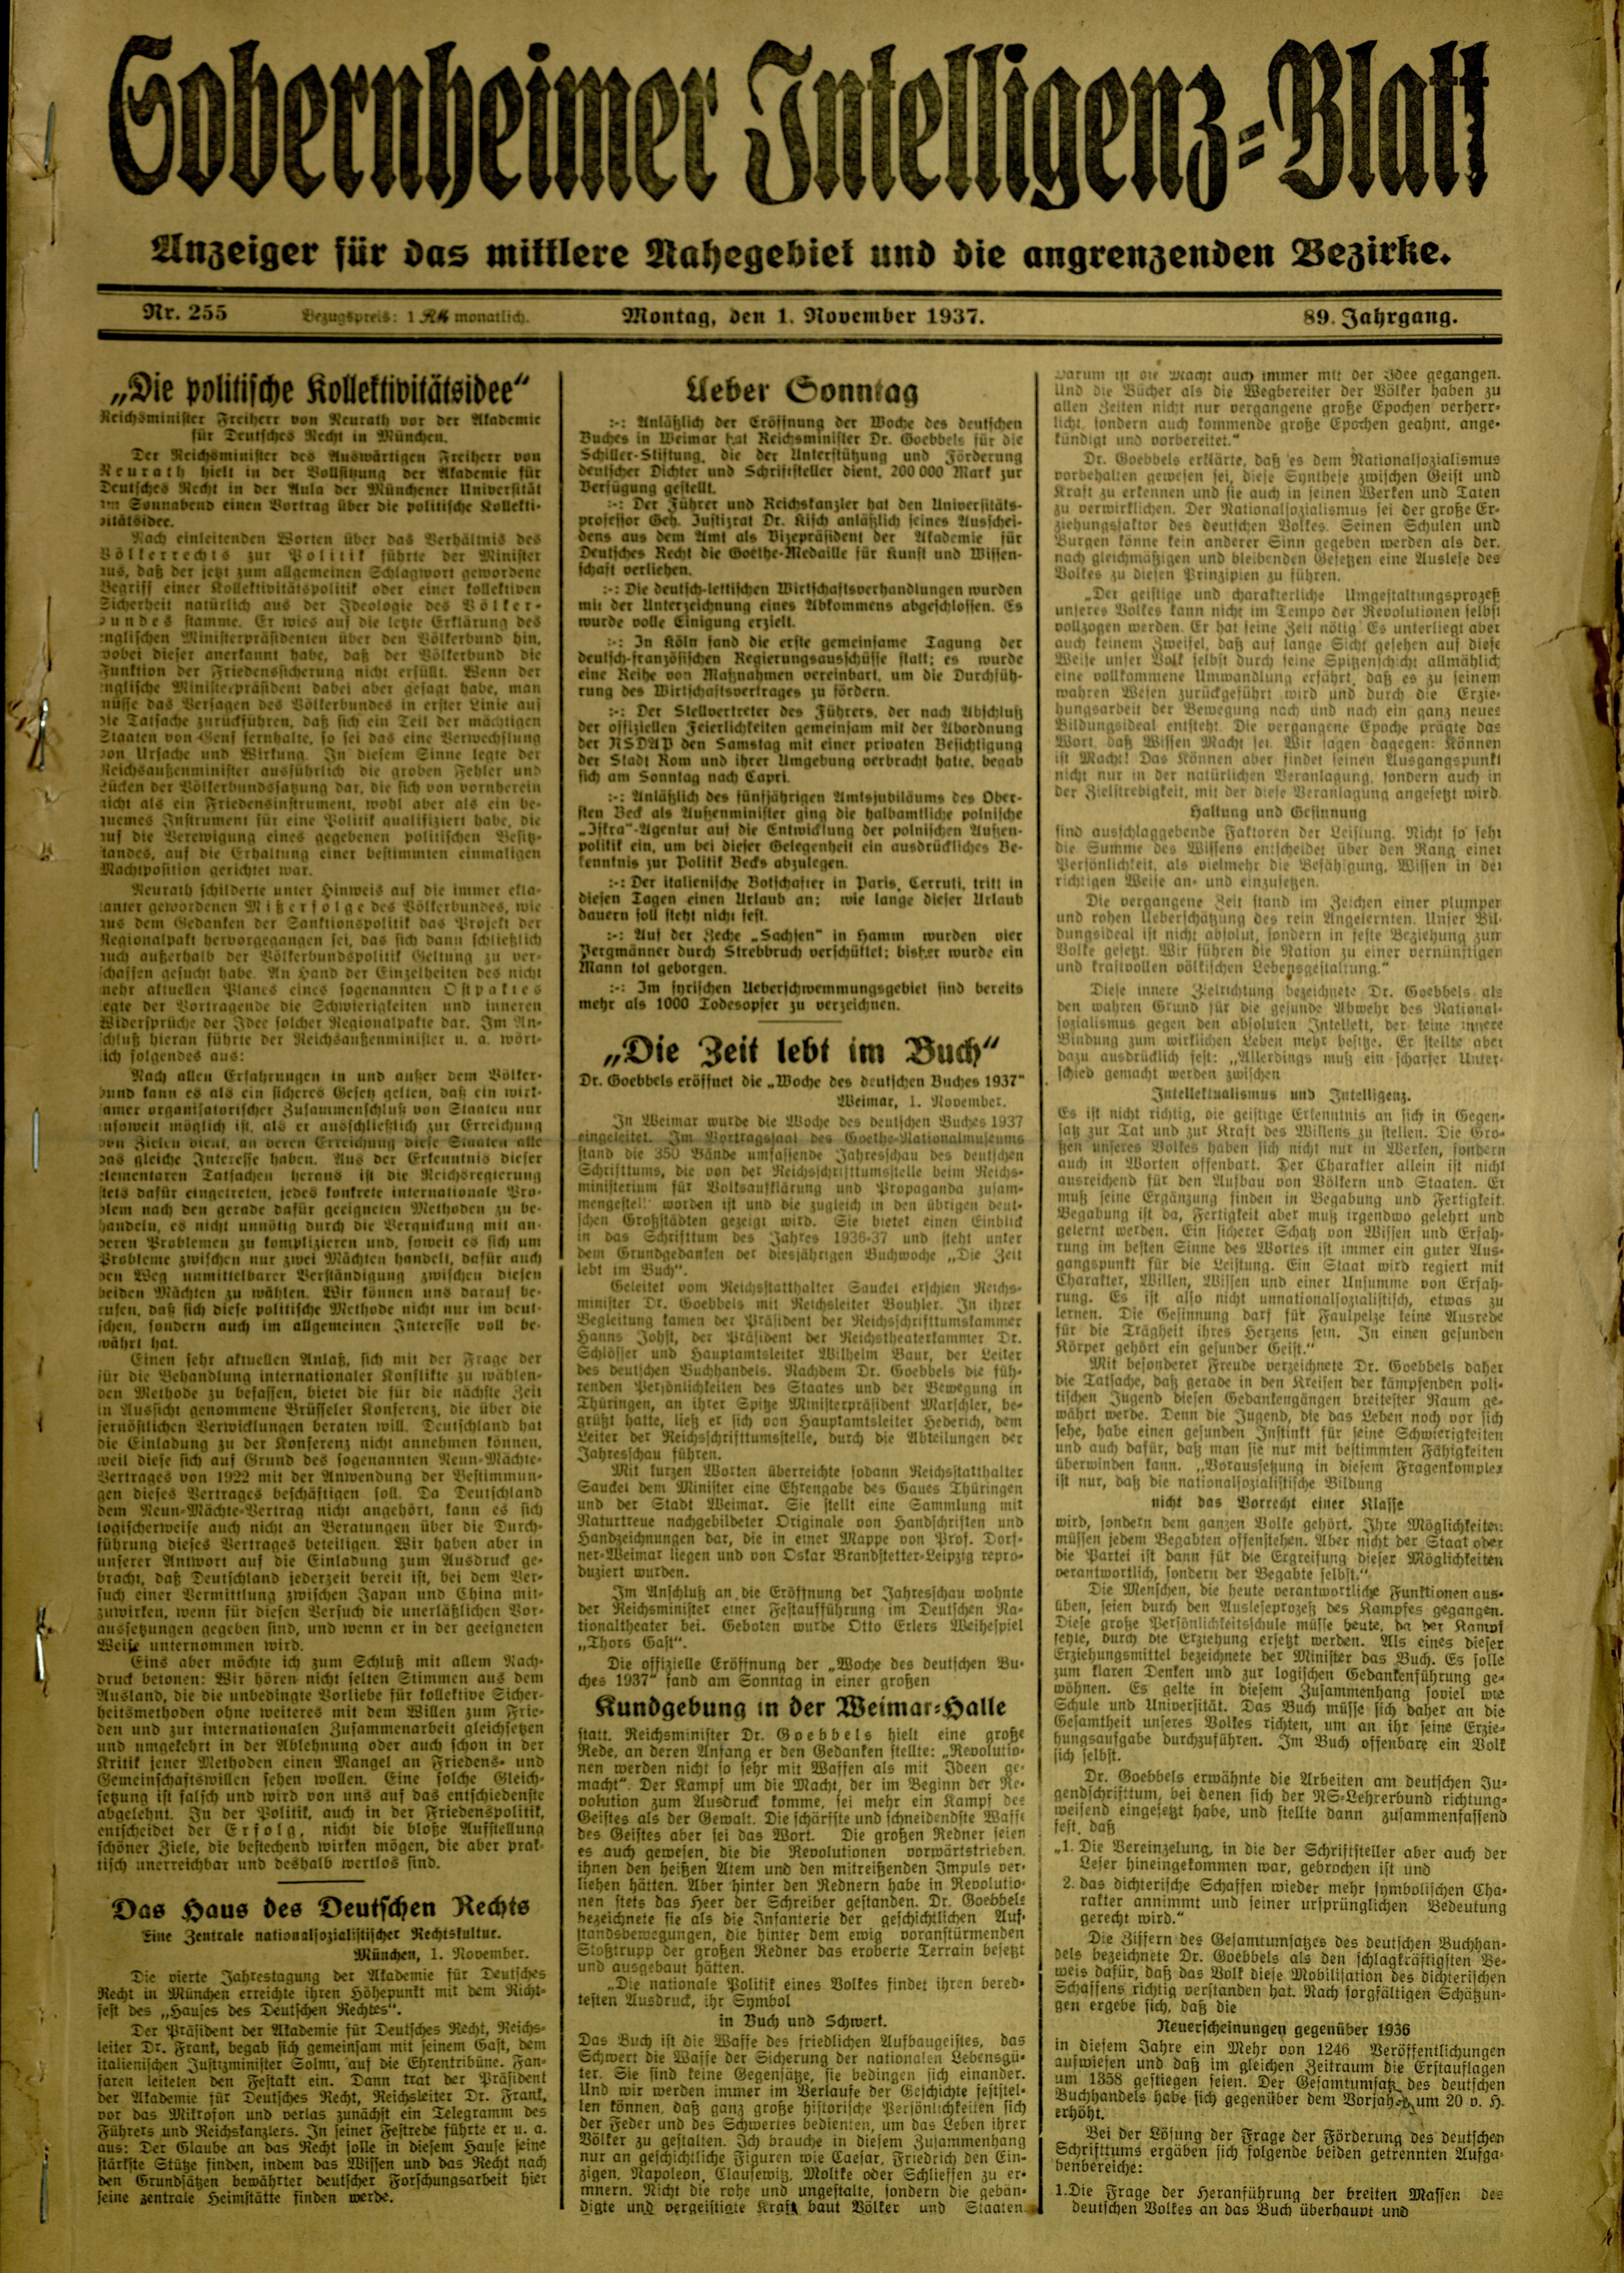 Zeitung: Sobernheimer Intelligenzblatt; November 1937, Jg. 88 Nr. 255 (Heimatmuseum Bad Sobernheim CC BY-NC-SA)